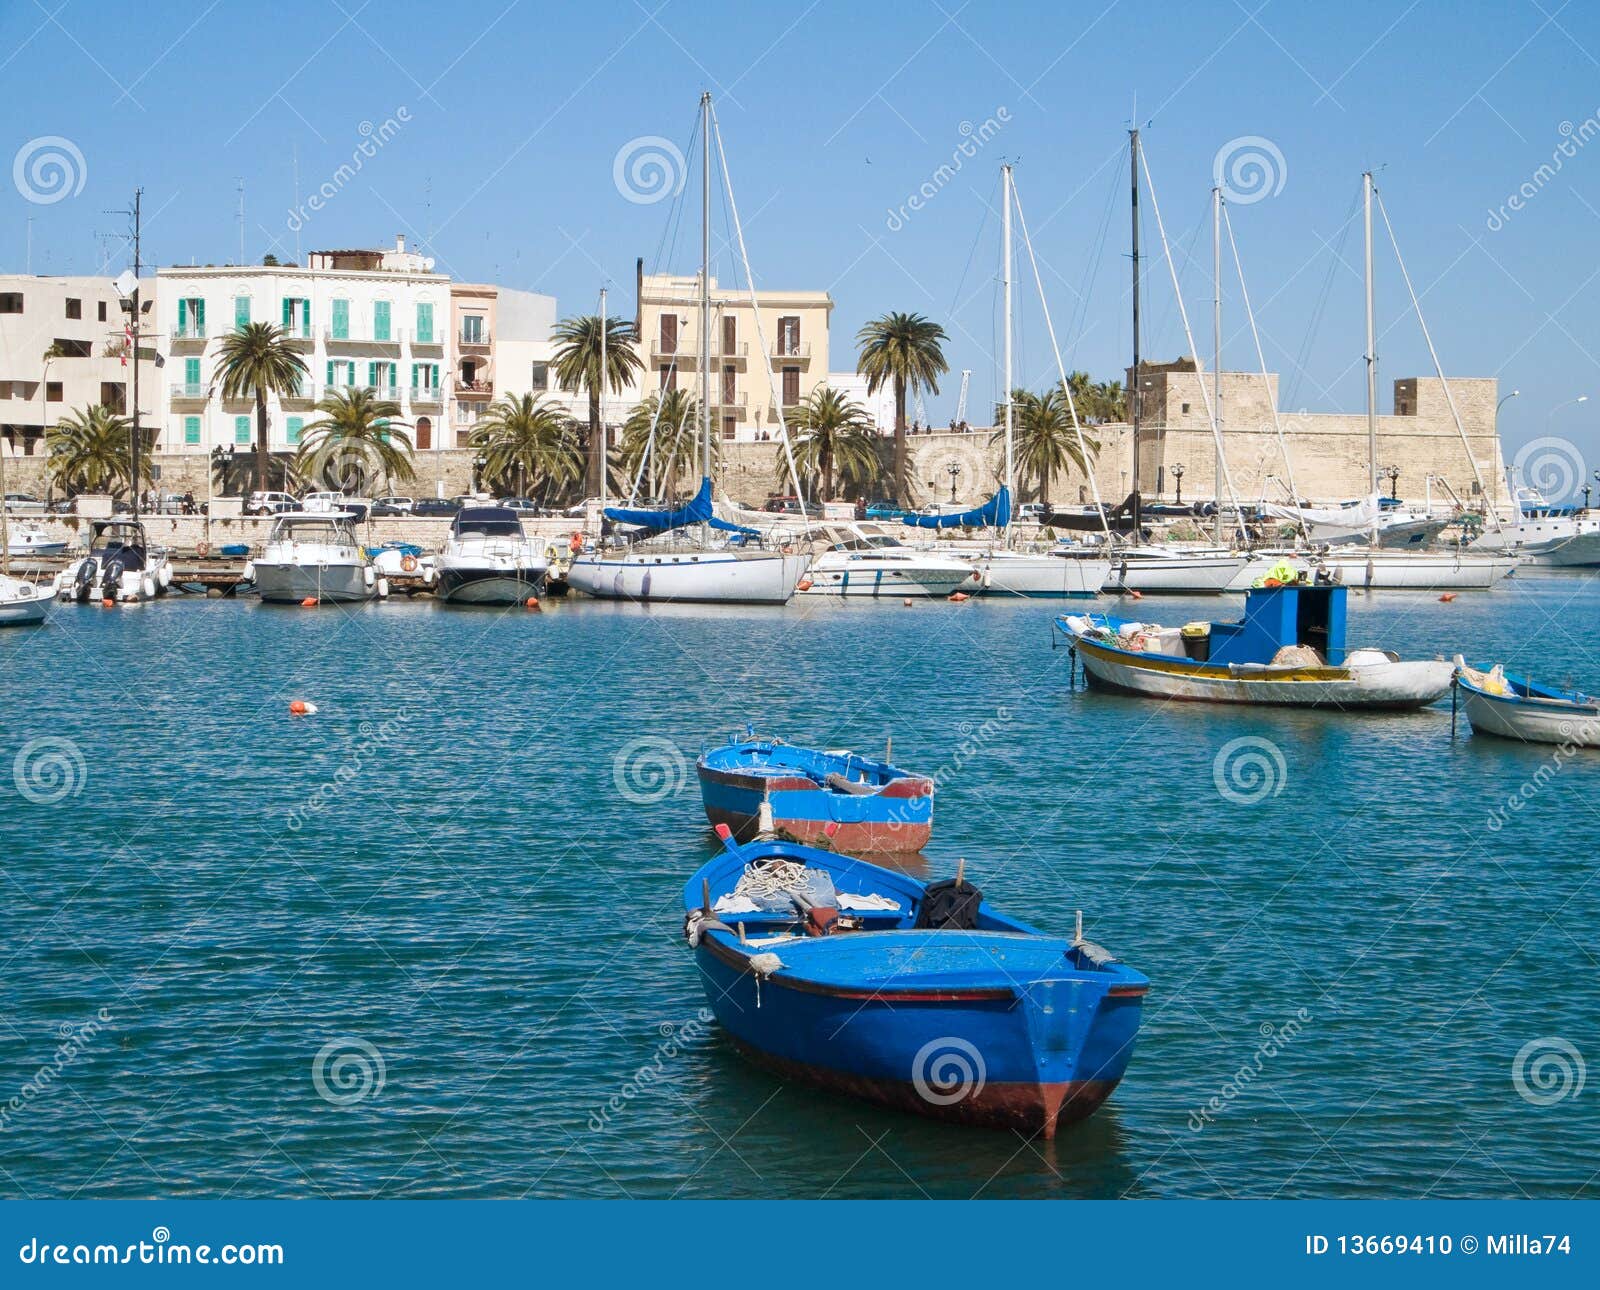 boats at the old port of bari. apulia.